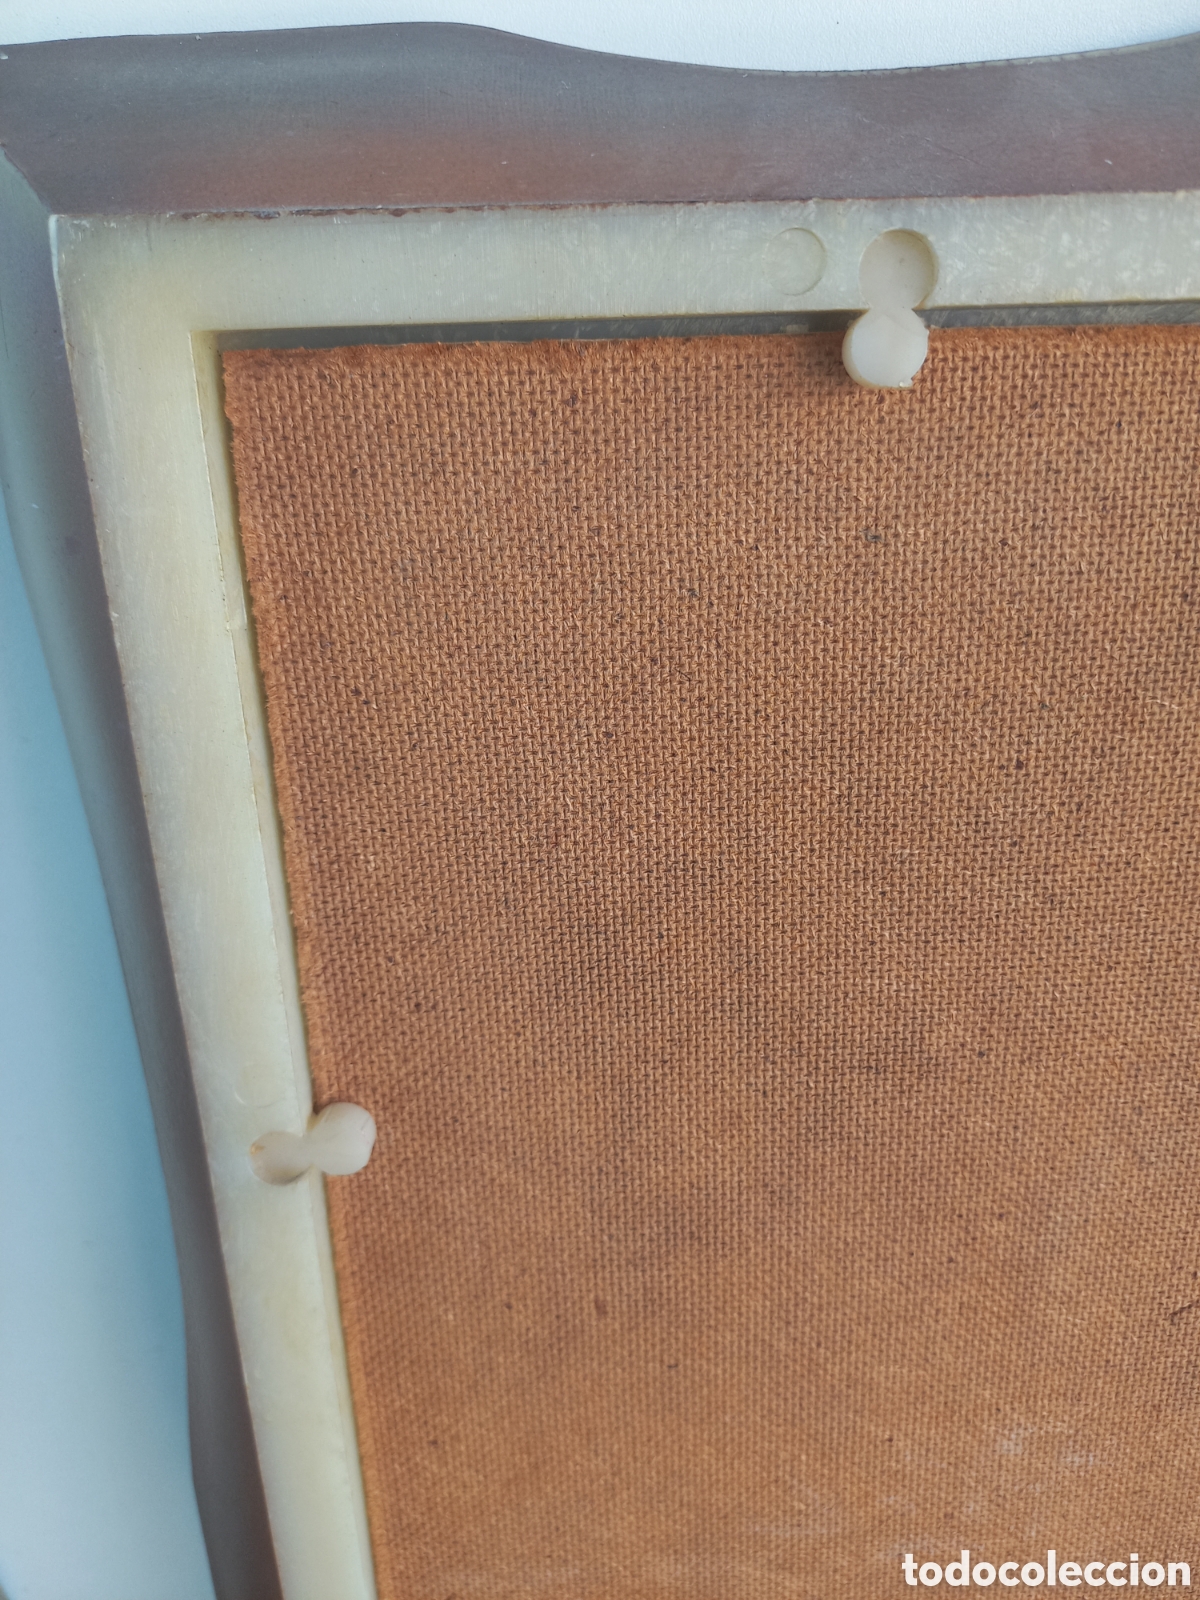 marco cuadro de resina o baquelita estilo antig - Compra venta en  todocoleccion